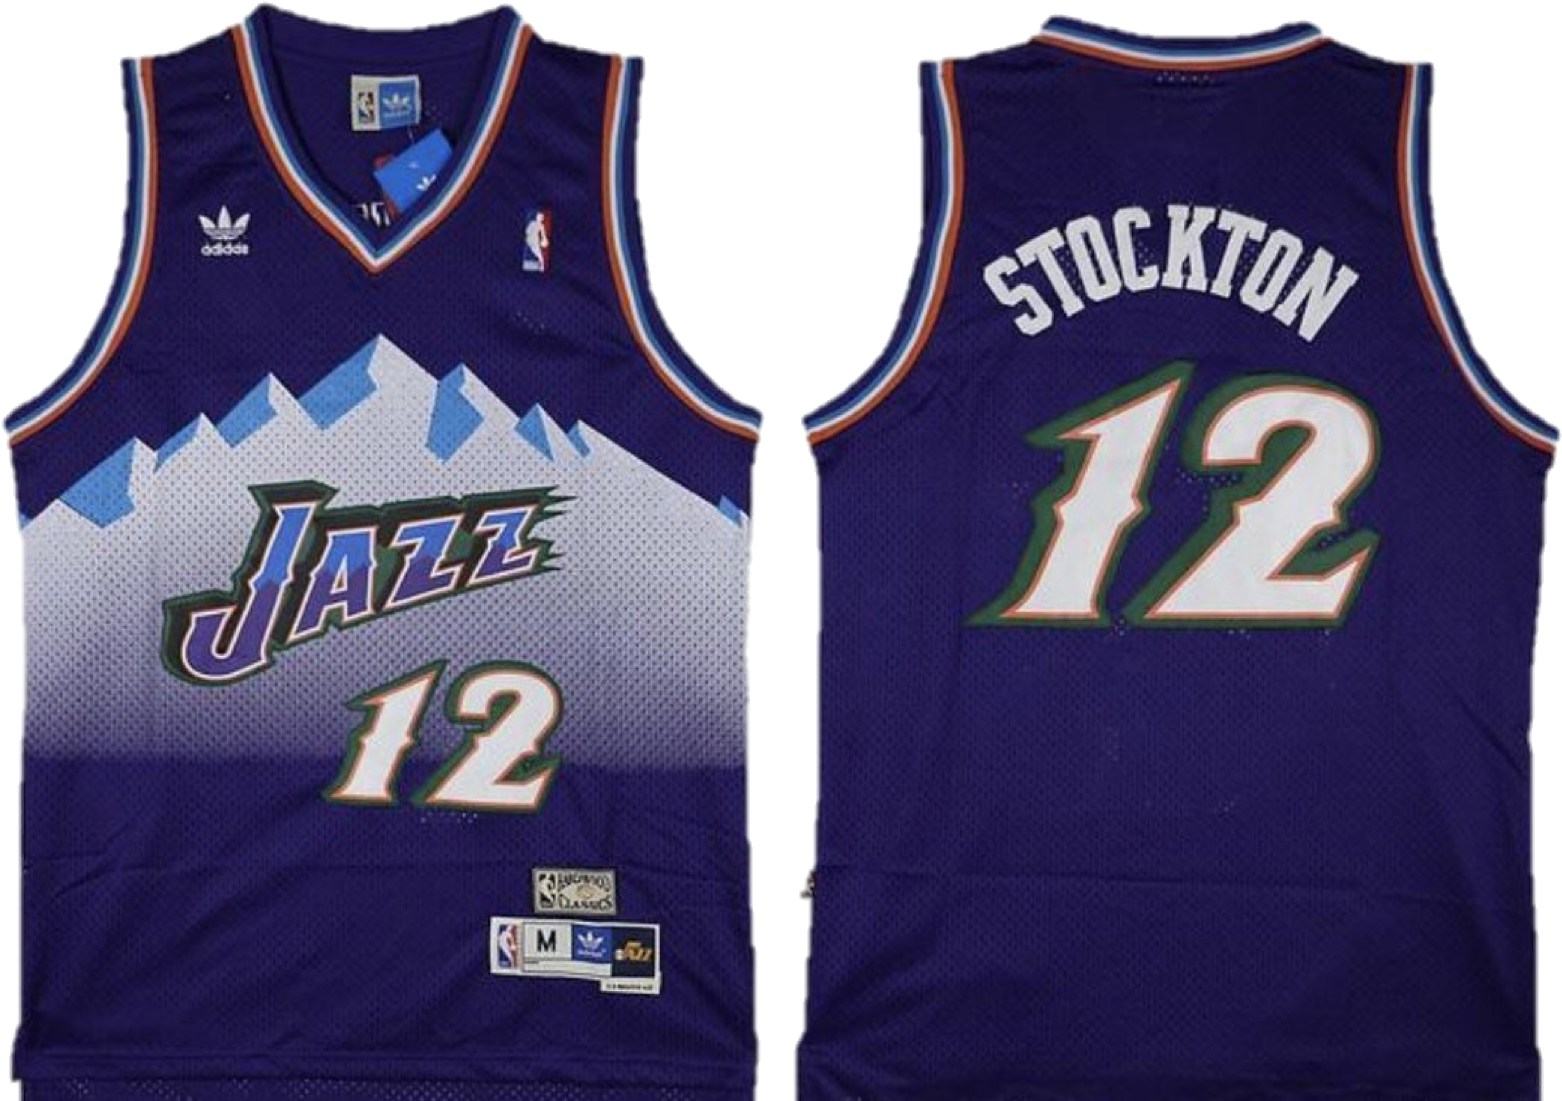 Utah Jazz Stockton12 Jersey PNG image